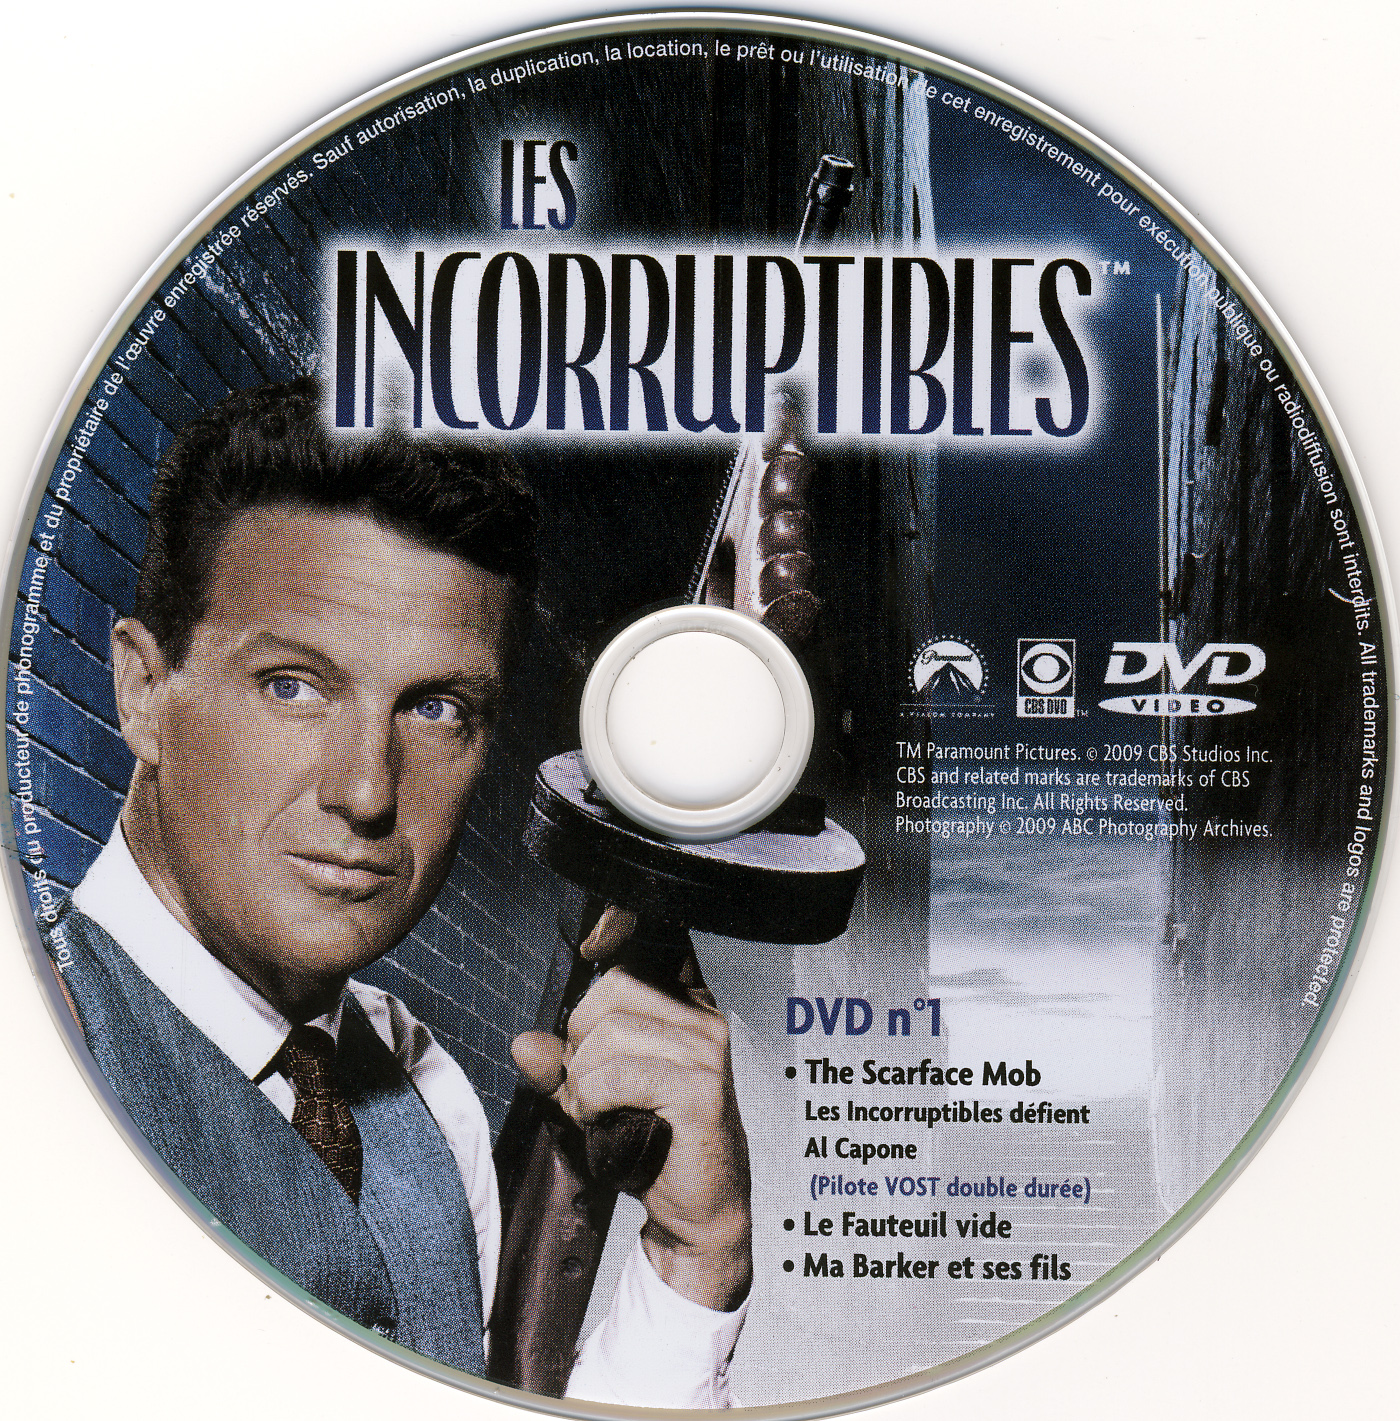 Les incorruptibles vol 01 DVD 1